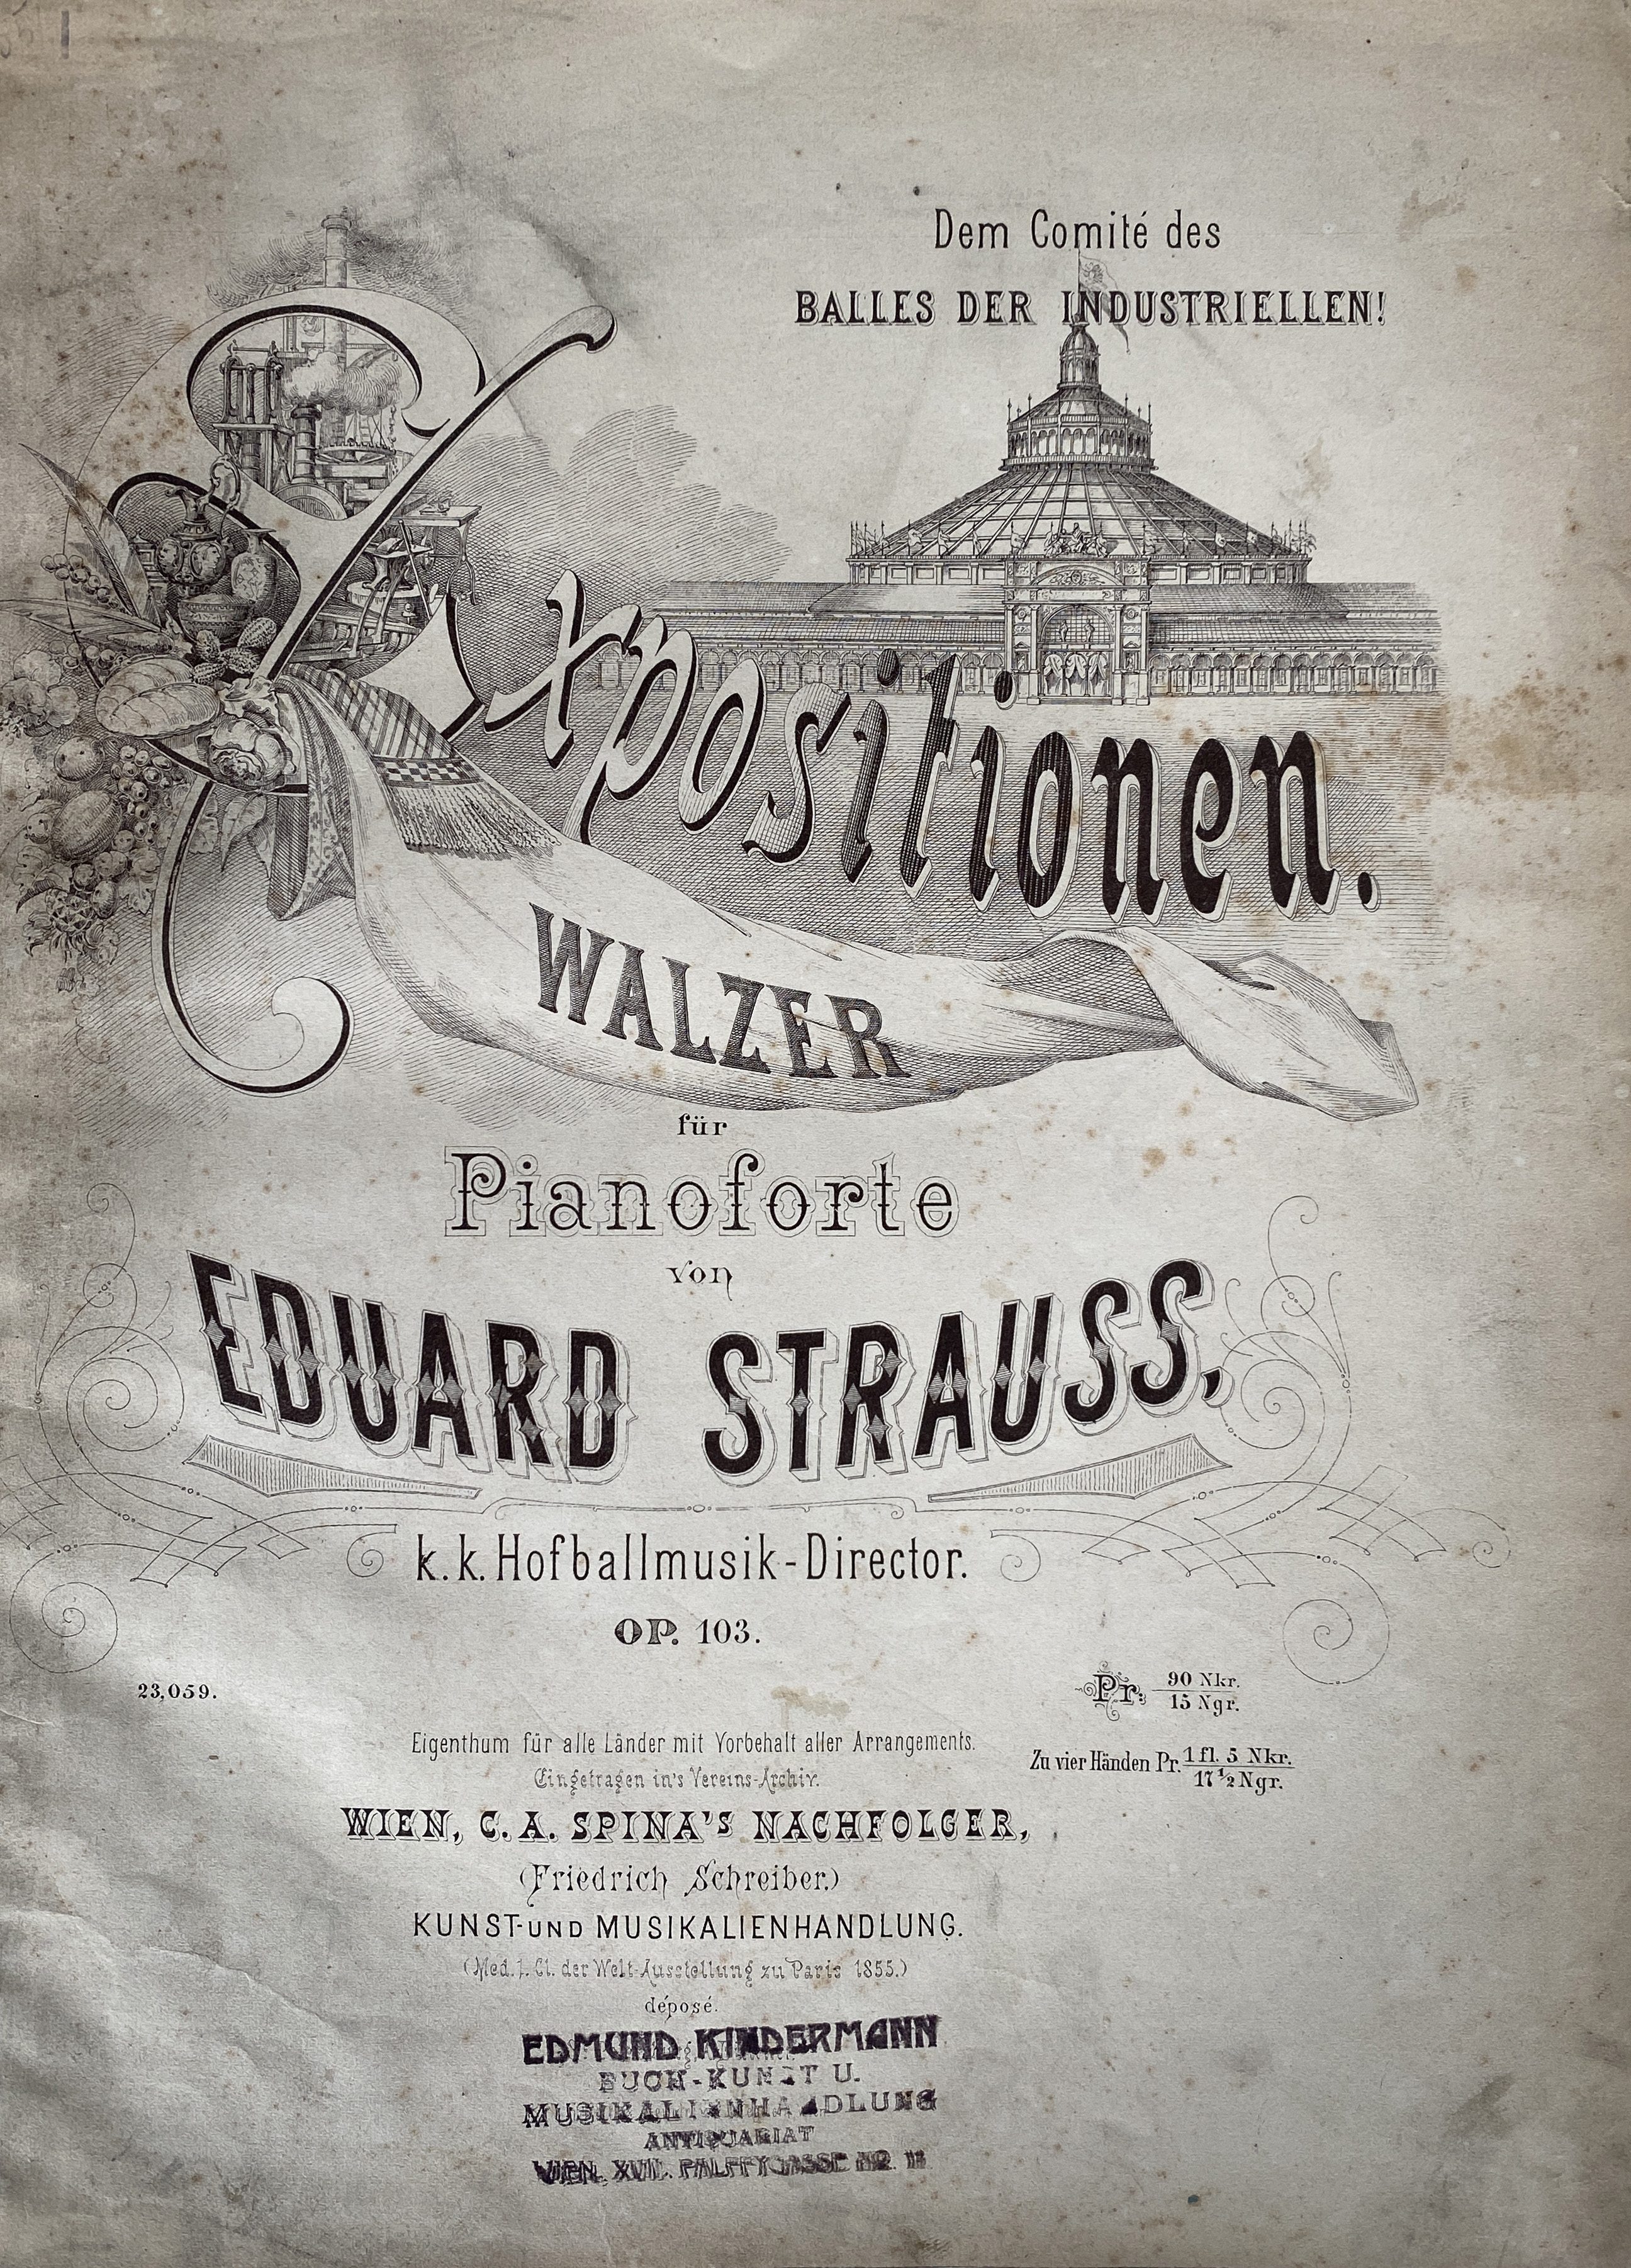 Waltz "Expositionen" by Eduard Strauss